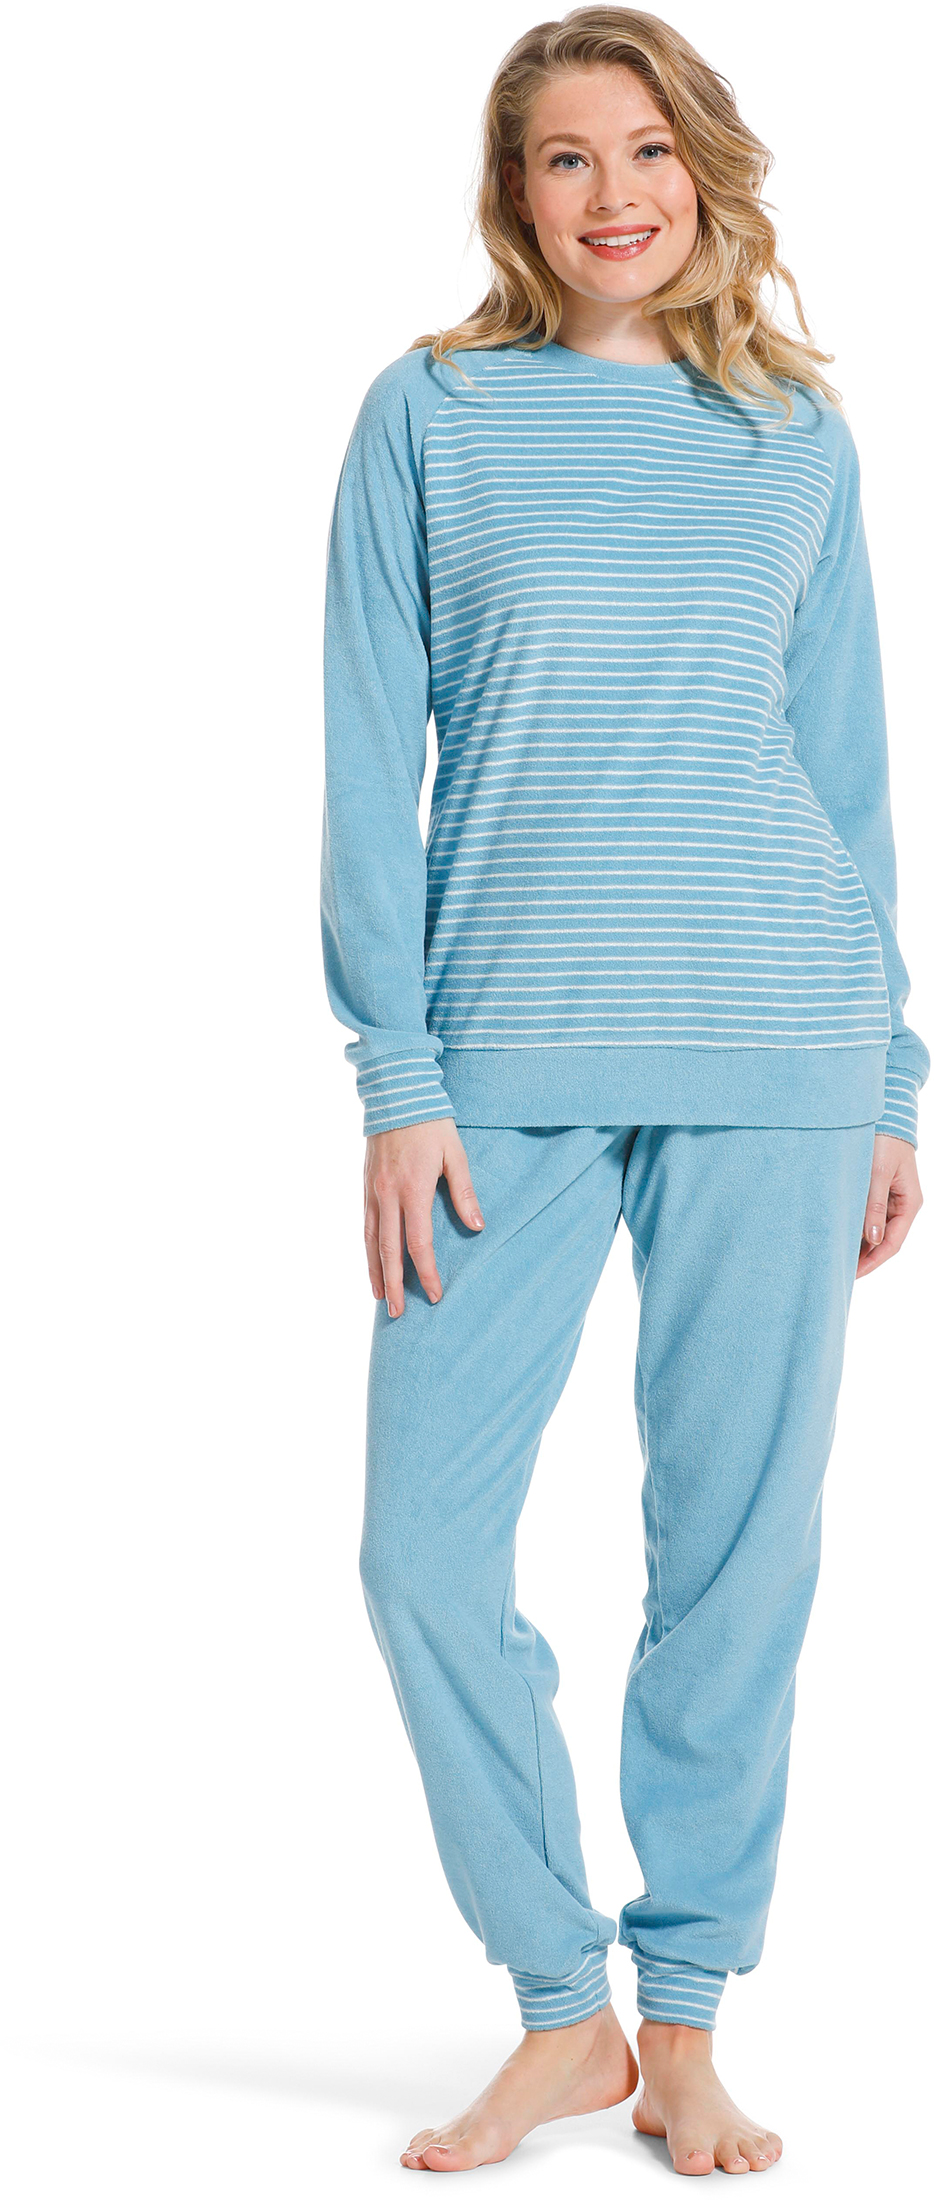 Pastunette badstof dames pyjama 20222-144-2 - Blauw - 46